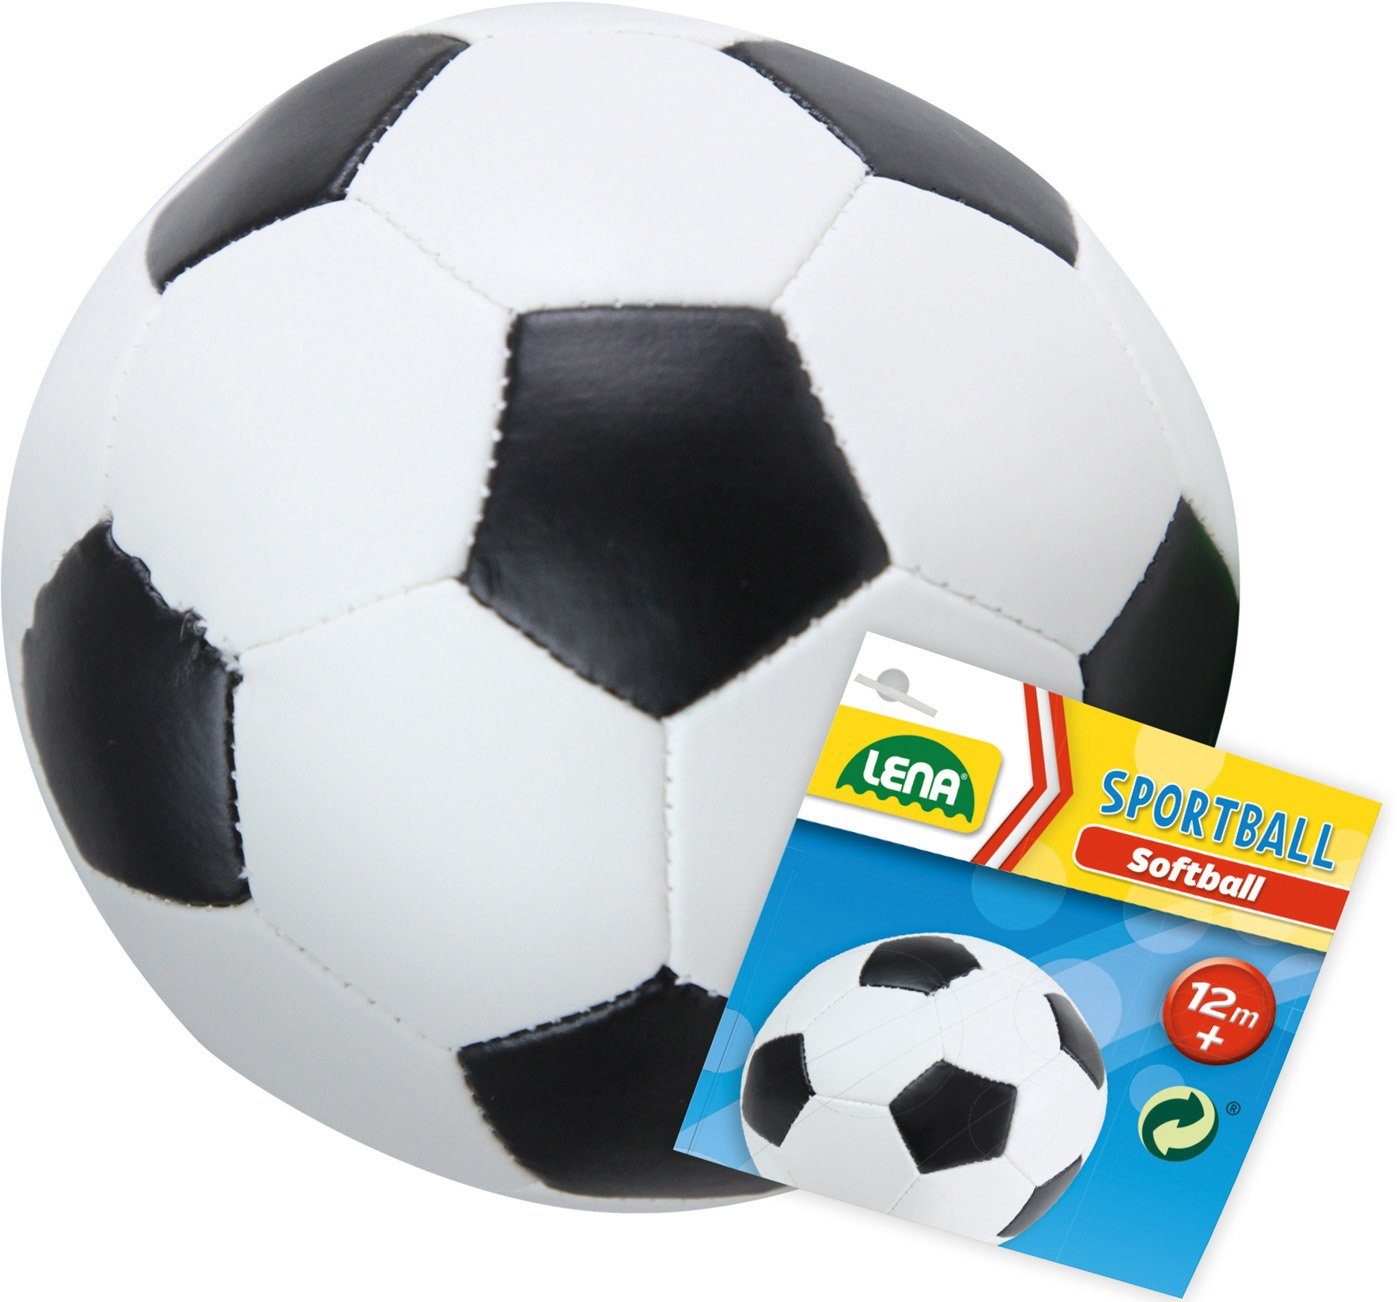 18 Made cm, Soft-Fußball in schwarz/weiß, Lena® Softball Europe